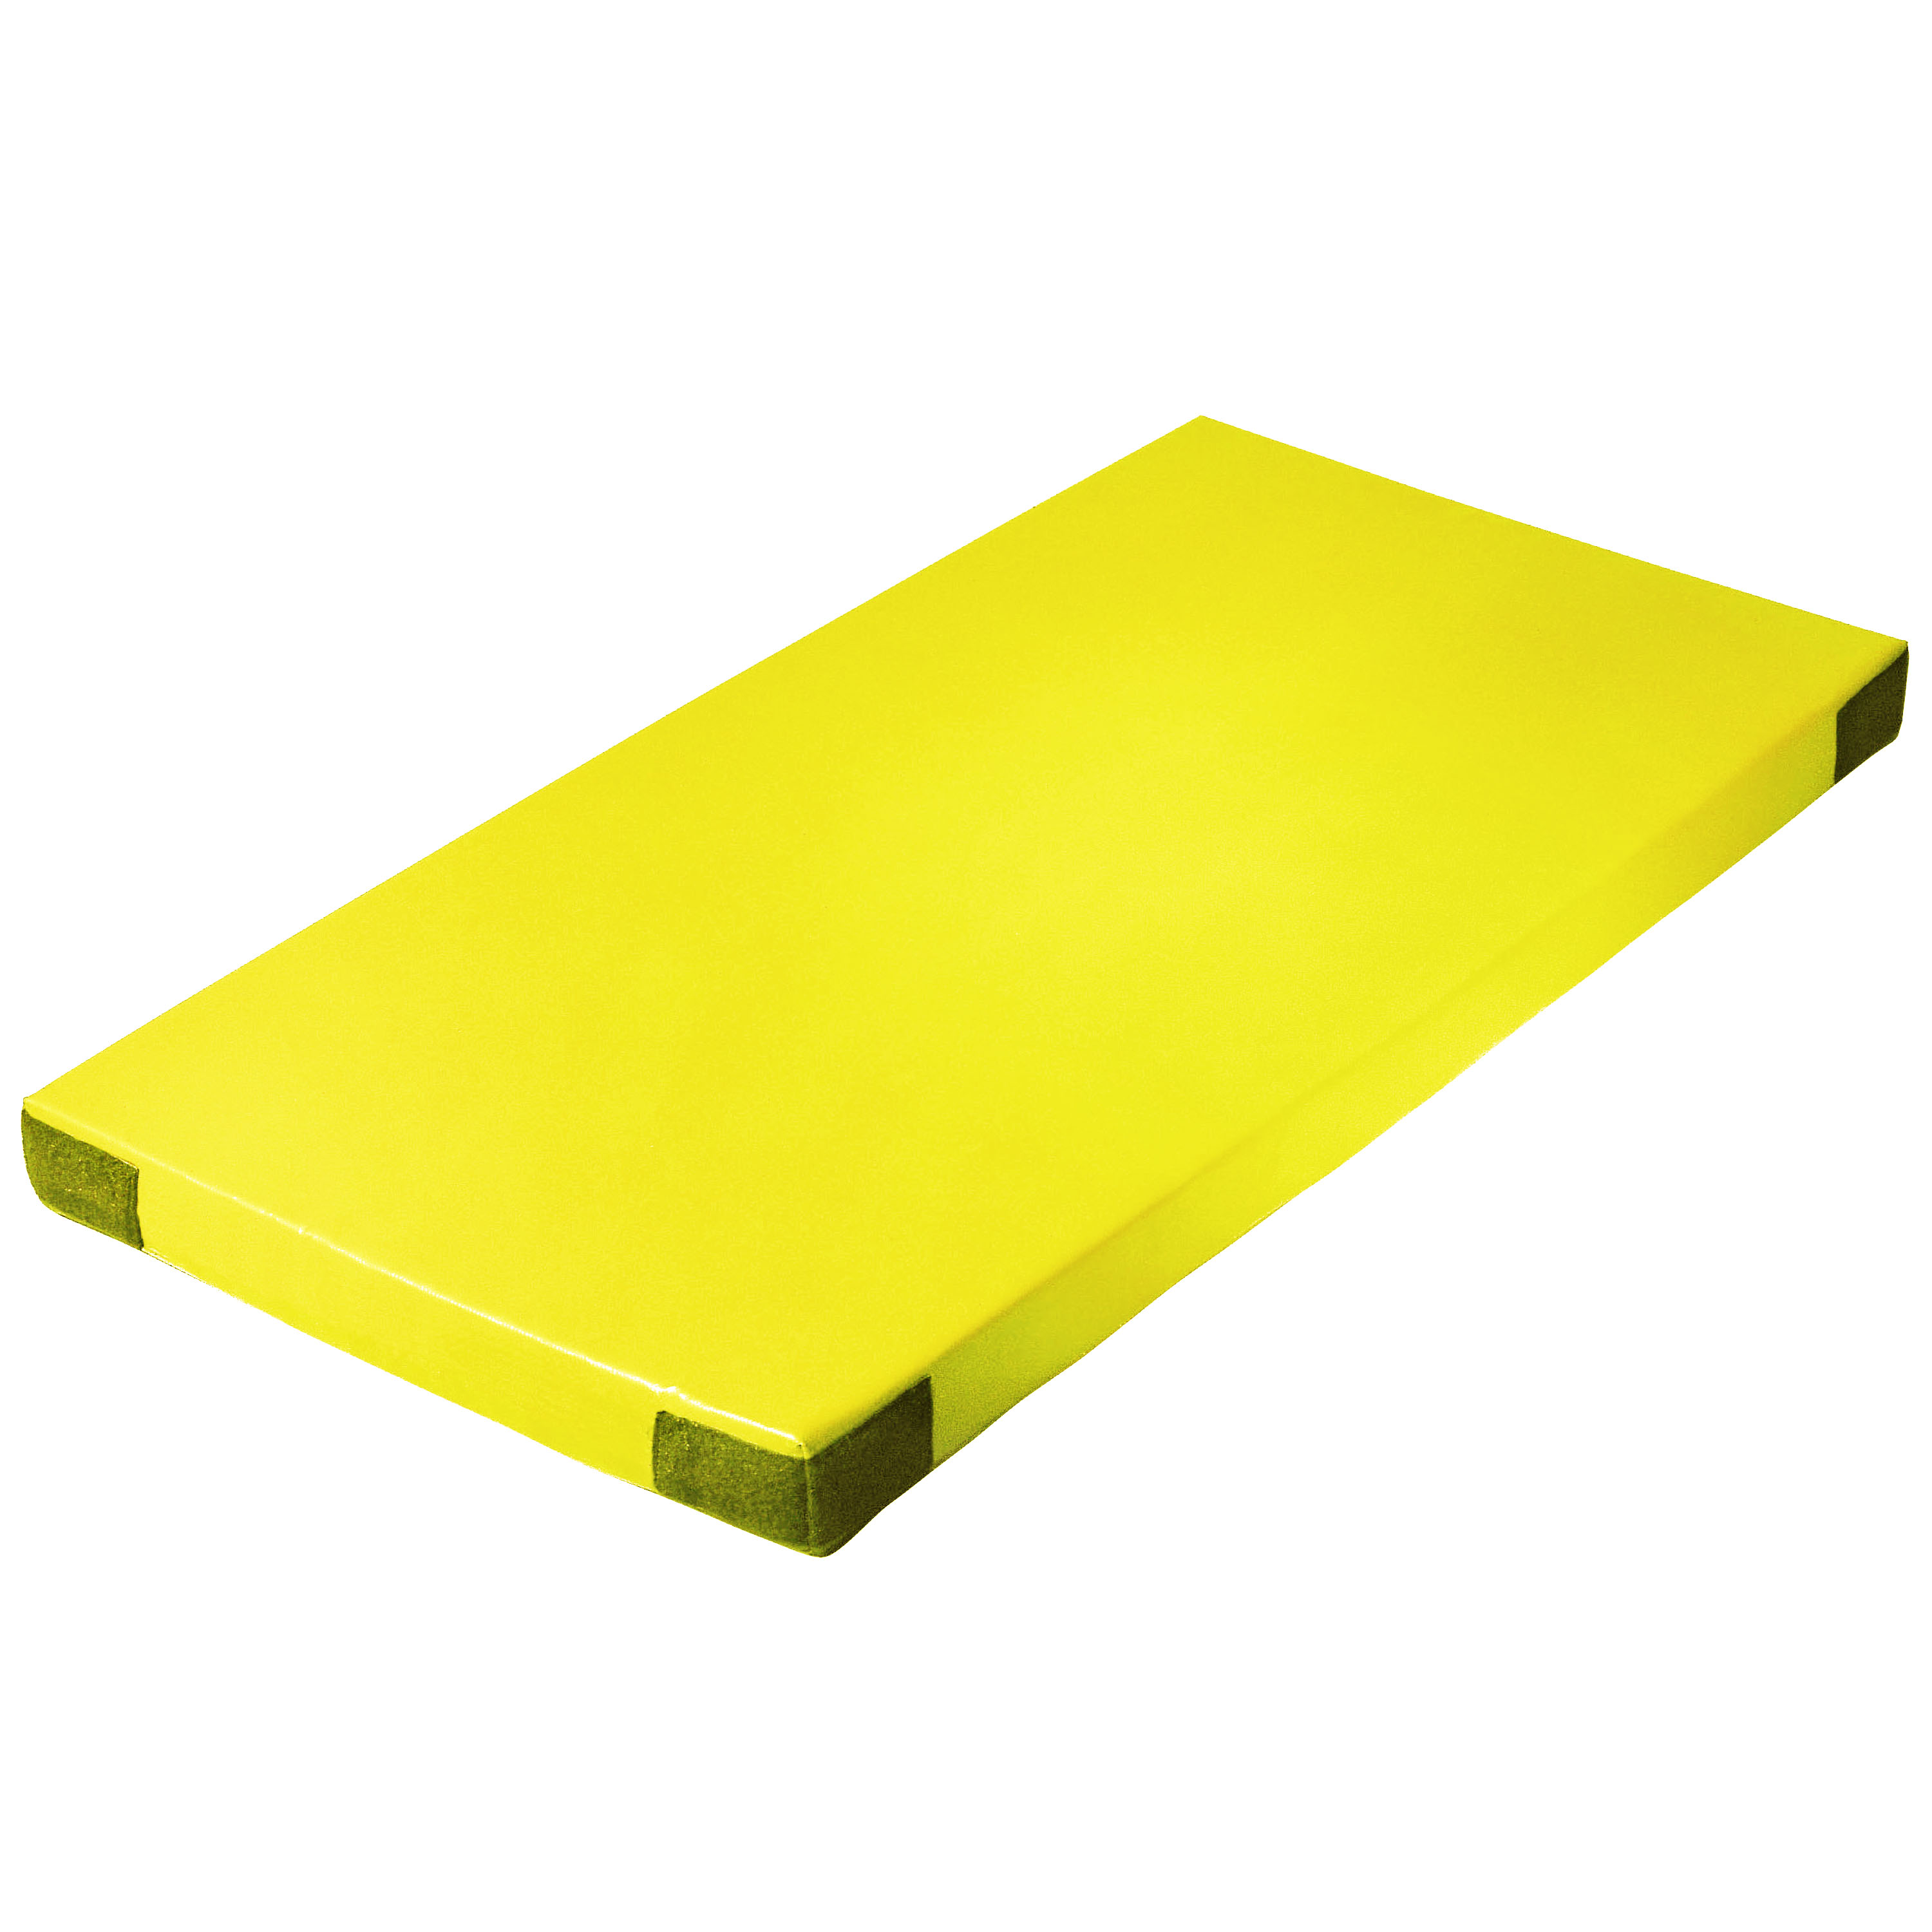 Super-Leichtturnmatte Klettecken 150 x 100 x 8 cm, gelb